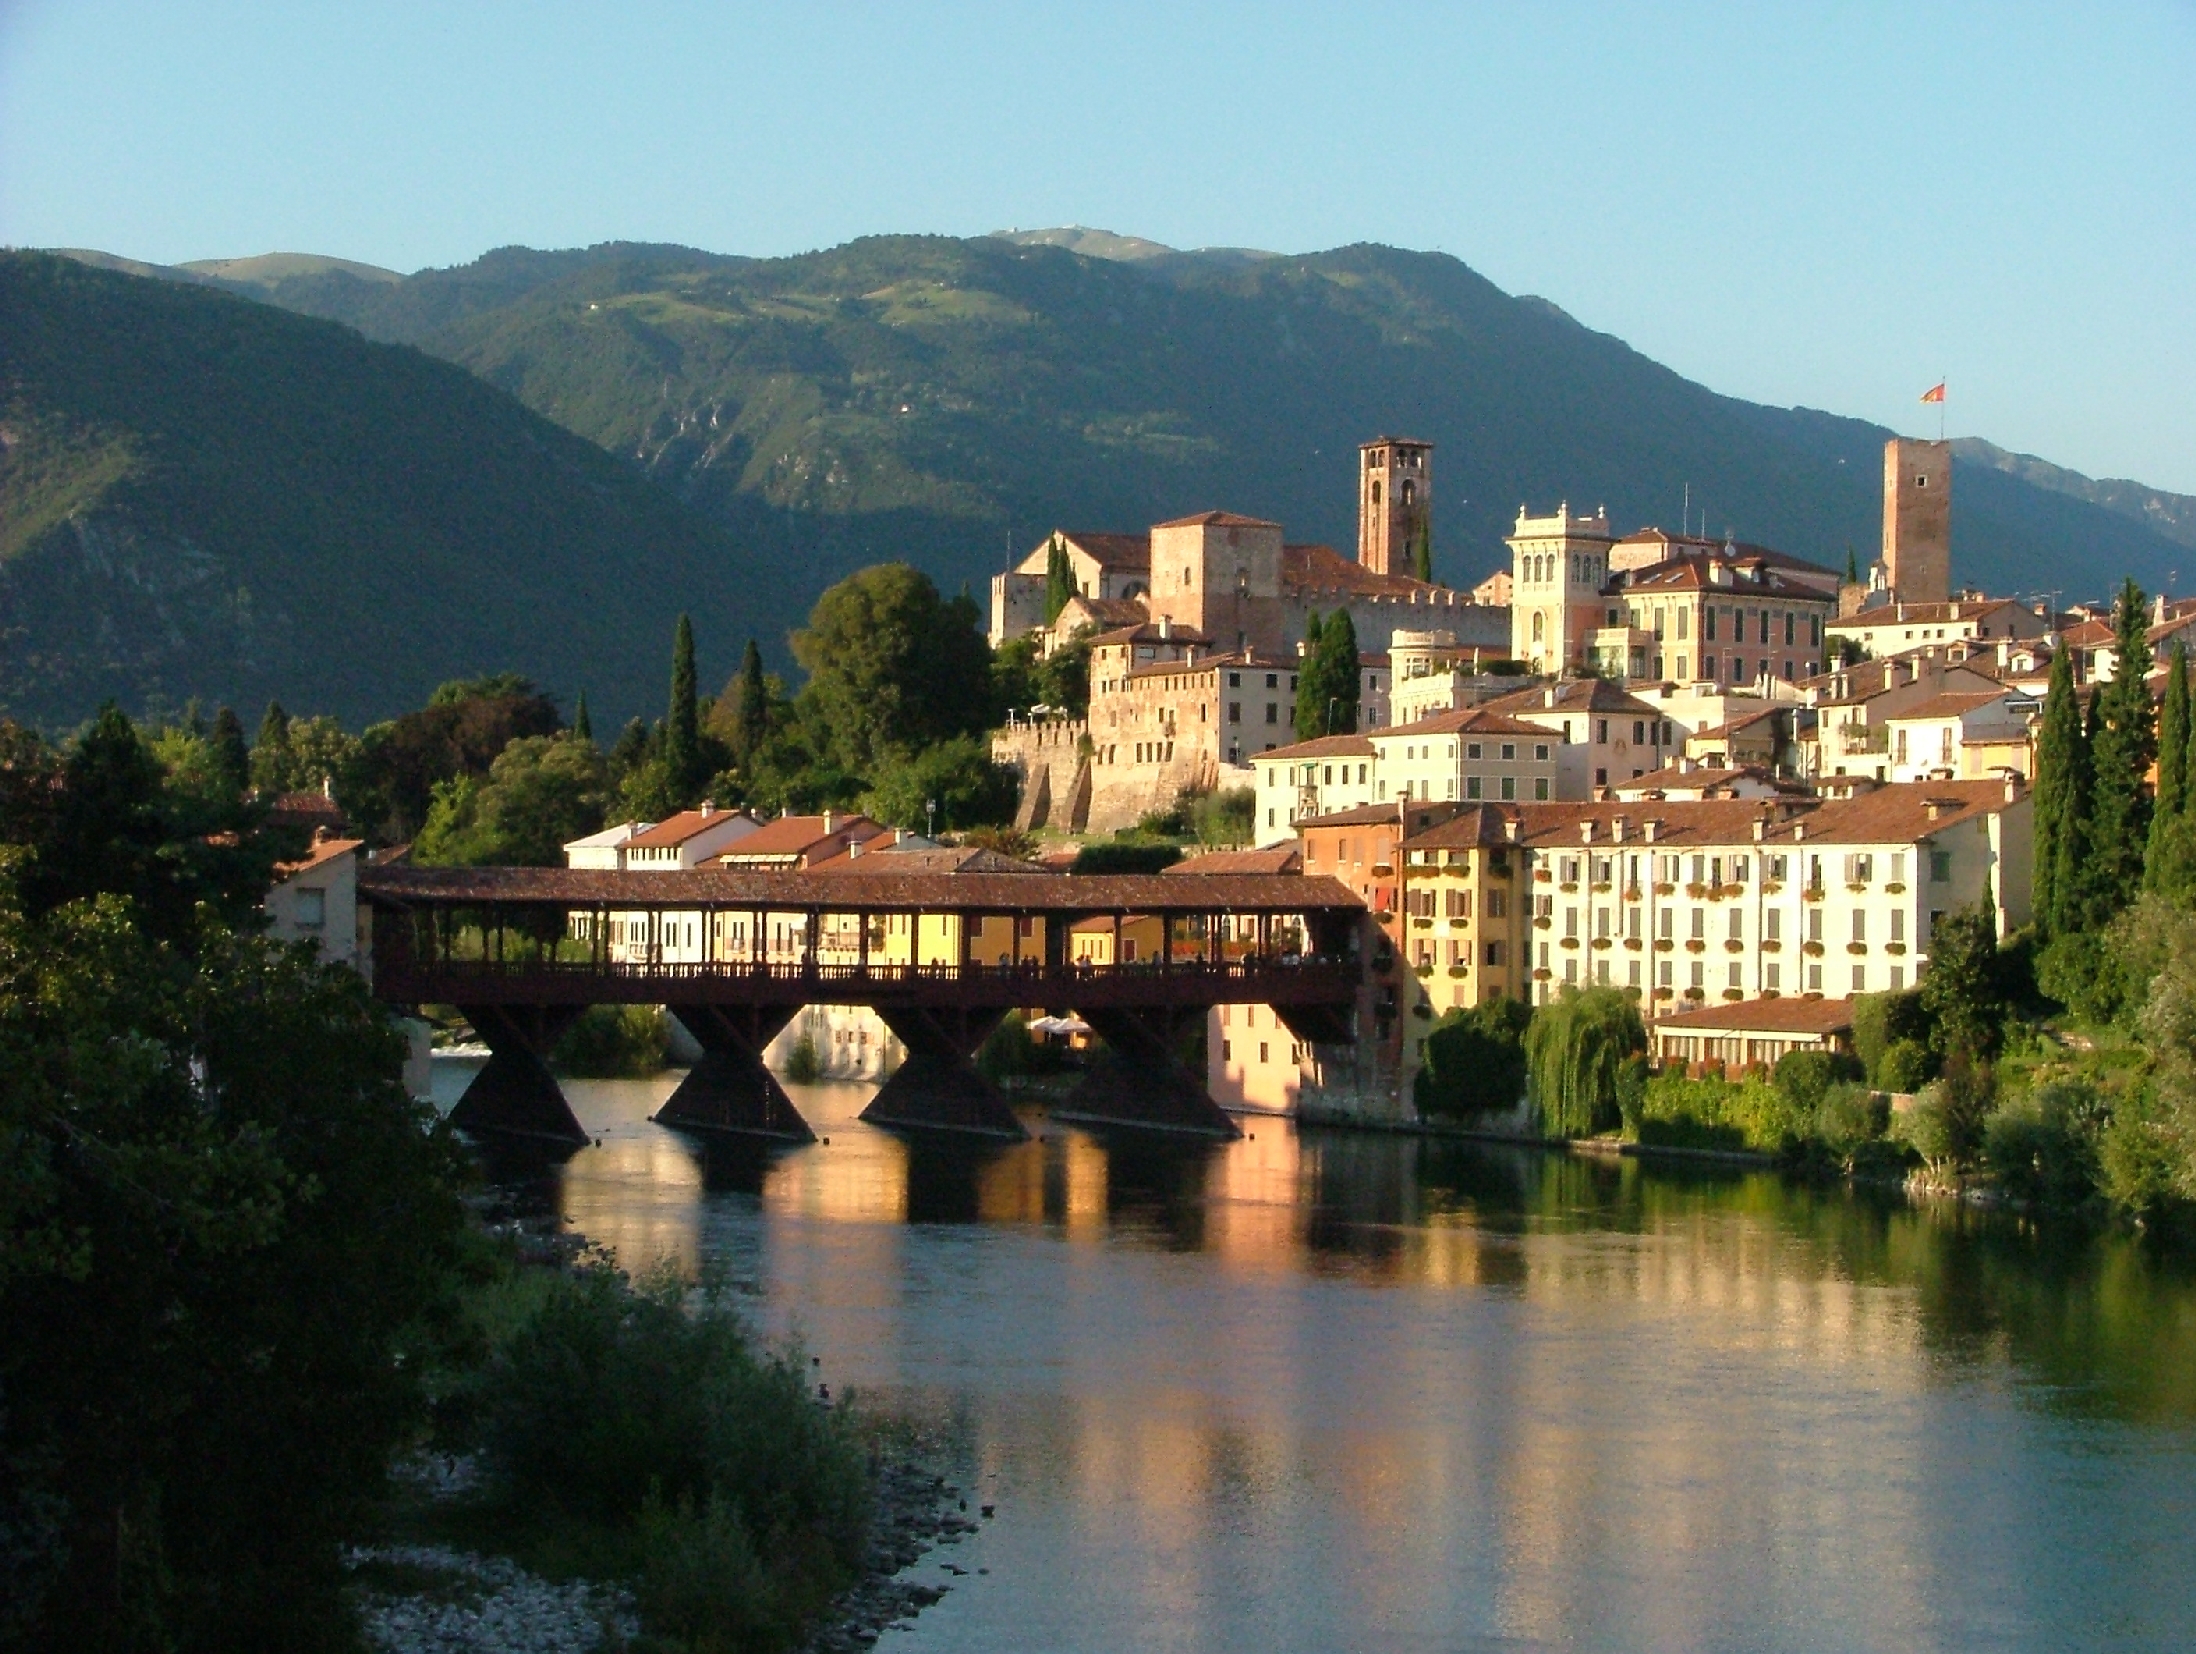 Ponte degli Alpini - gentile concessione dell’Archivio di Vicenza è 